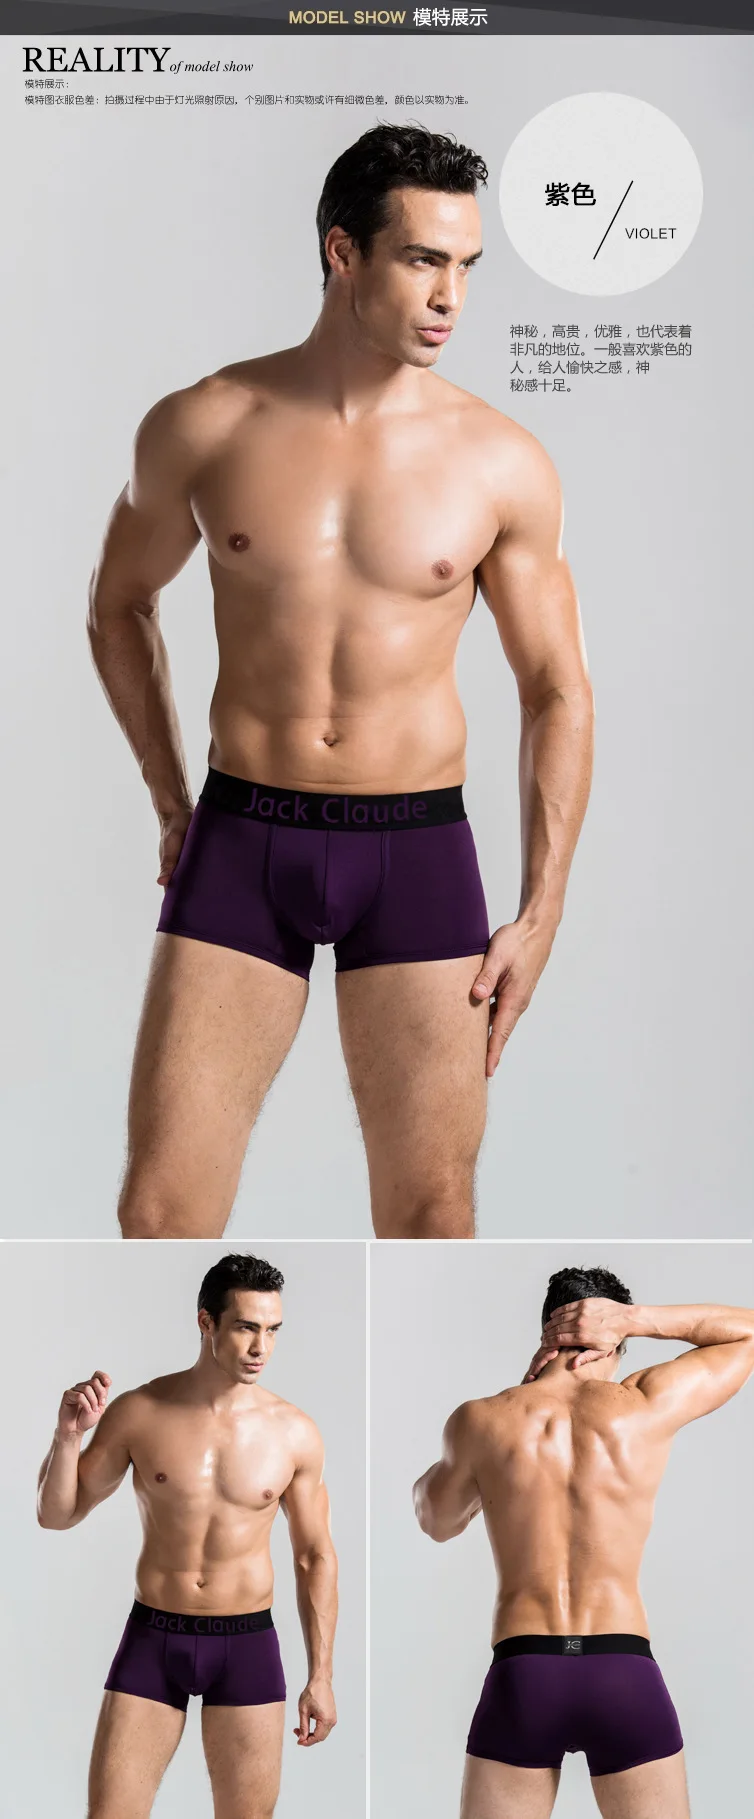 10 PCS Jack Claude Men Underwear Boxers Brand Men Boxer Shorts Modal Sexy Cueca Boxer Mens 10 pcs Underwear Male Underpants best mens underwear